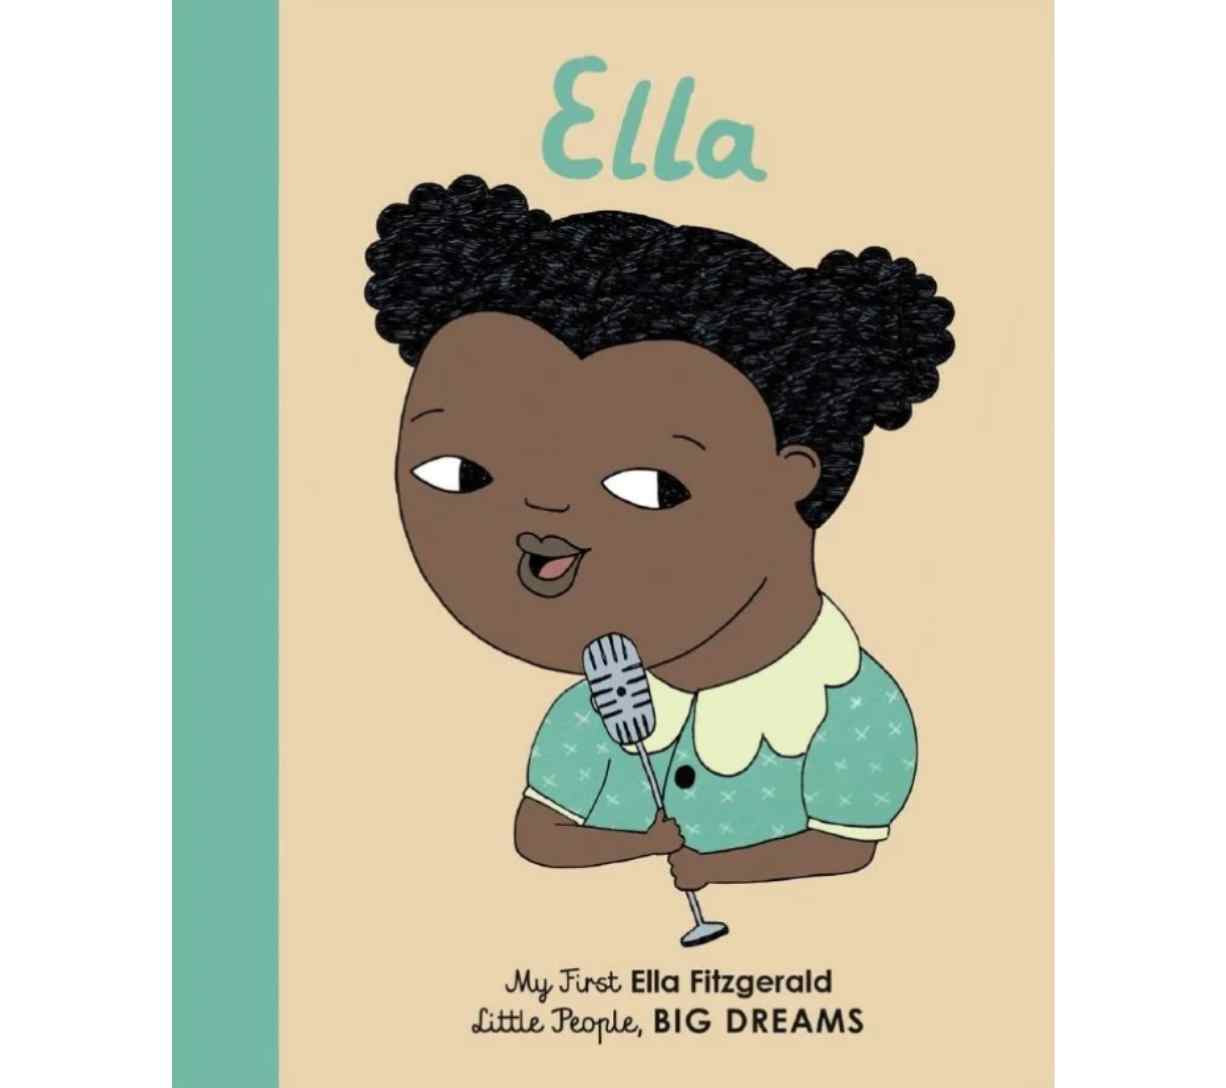 My First Ella Fitzgerald - Little People, Big Dreams